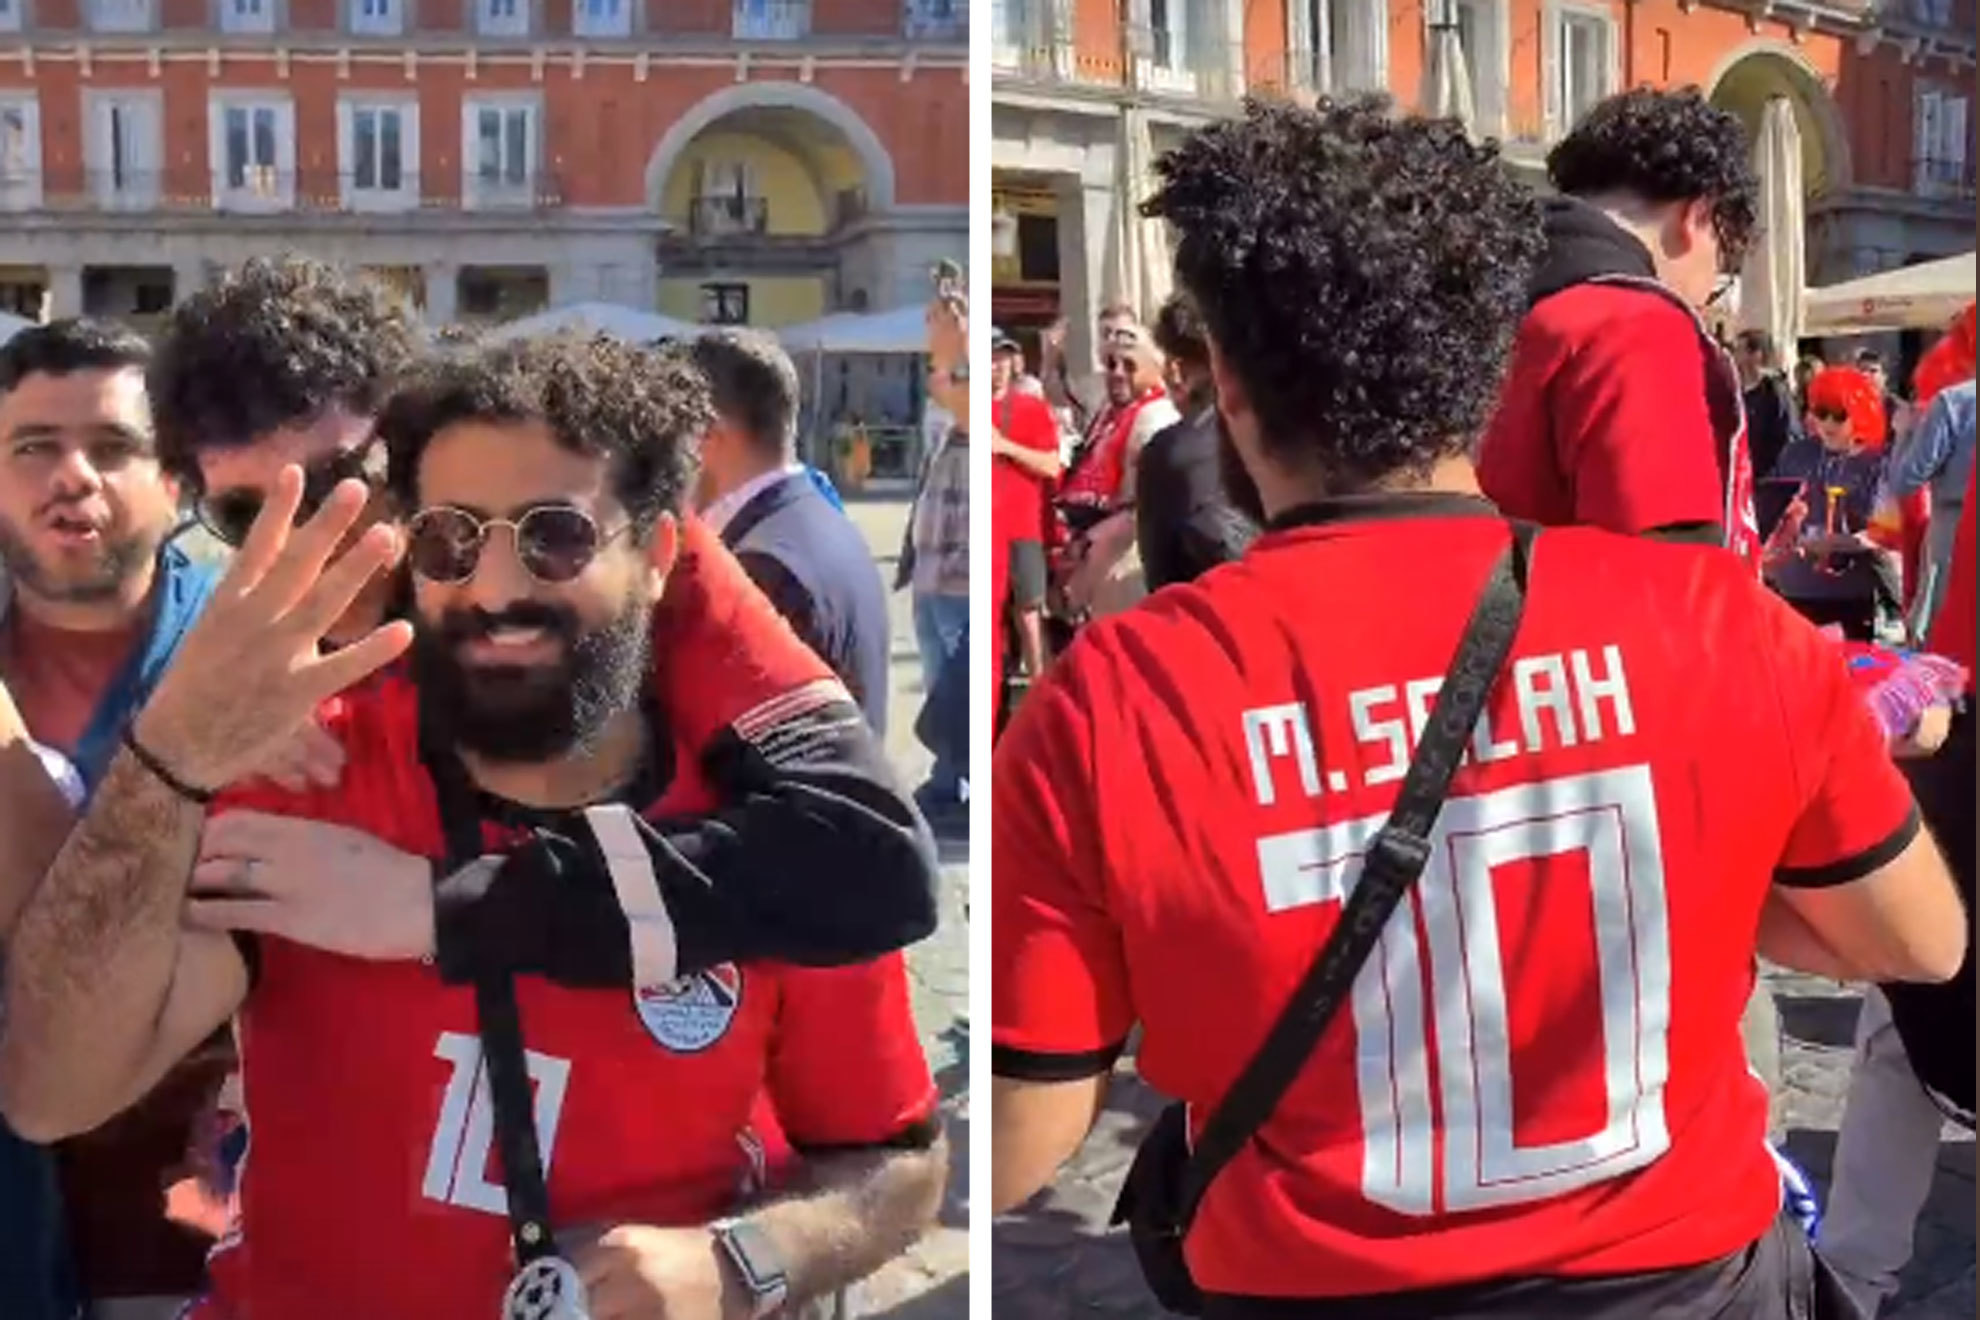 El 'doble' de Mo Salah se pasea por las calles de Madrid: "Esta noche marcar dos goles"